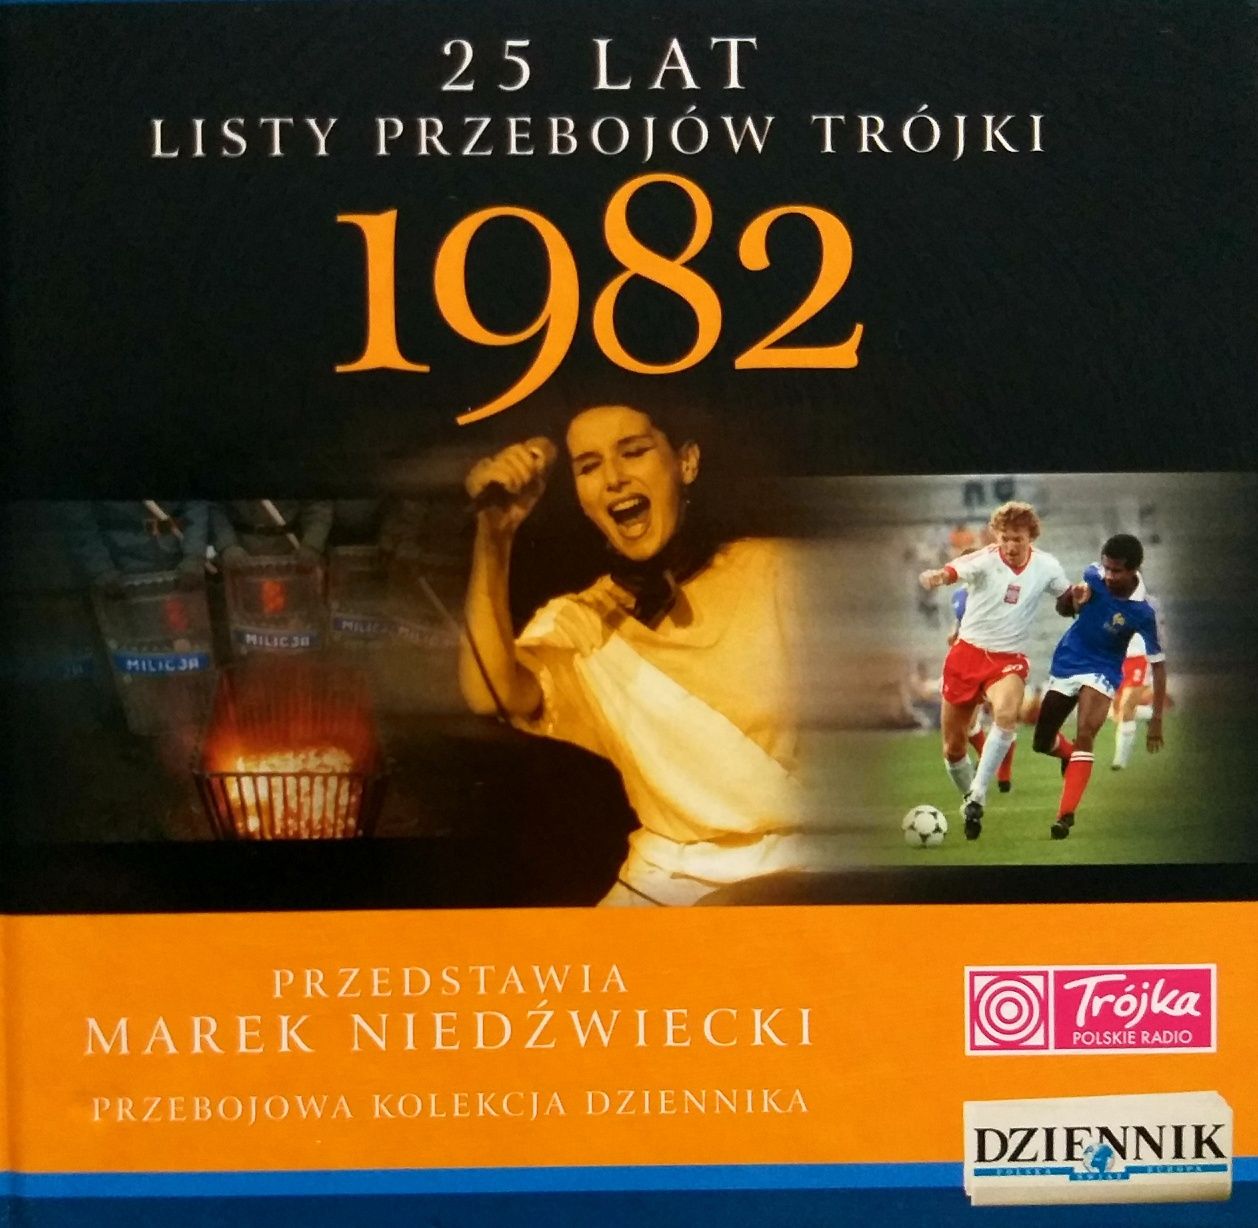 25 Lat Przebojów Trójki 1982r Przedstawia Marek Nied⁸źwiecki 2007r